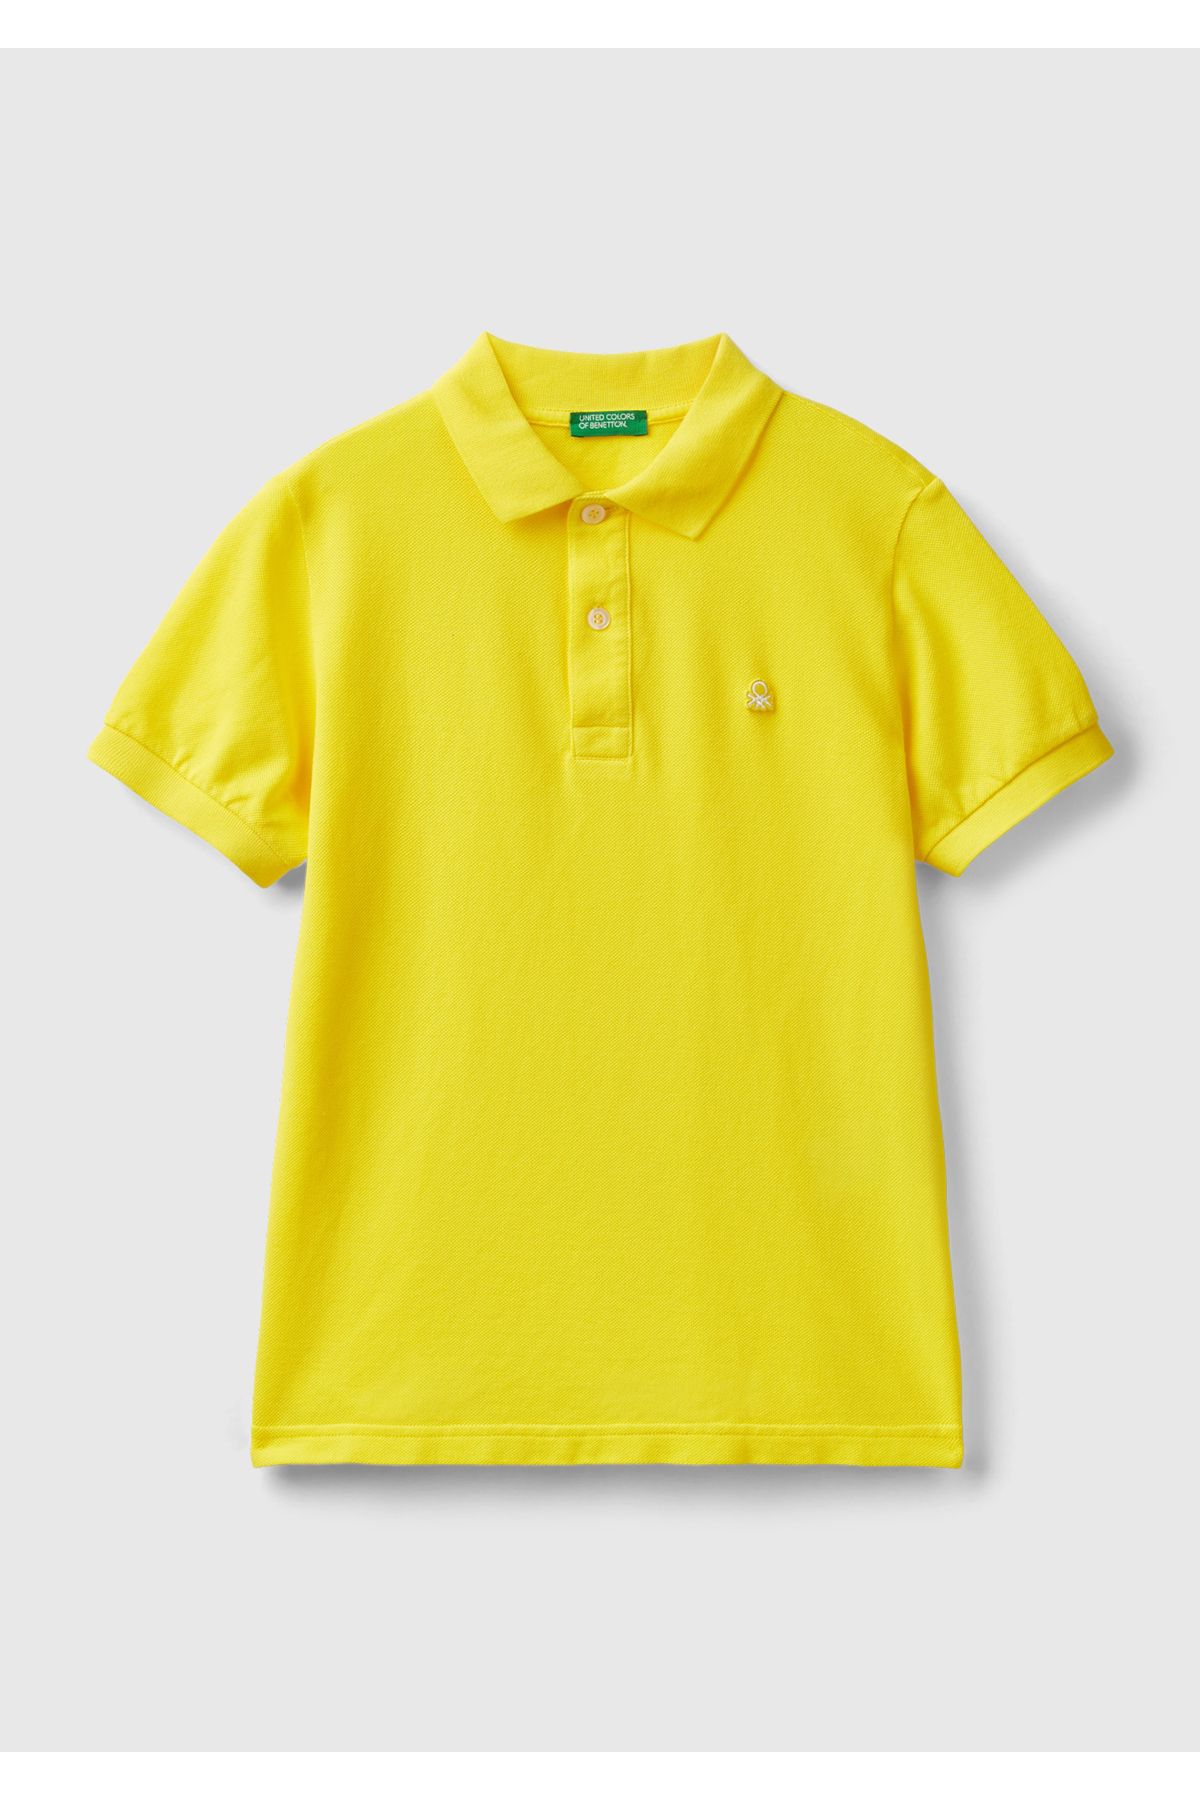 United Colors of Benetton Erkek Çocuk Neon Sarı Logolu Pike Polo T-Shirt